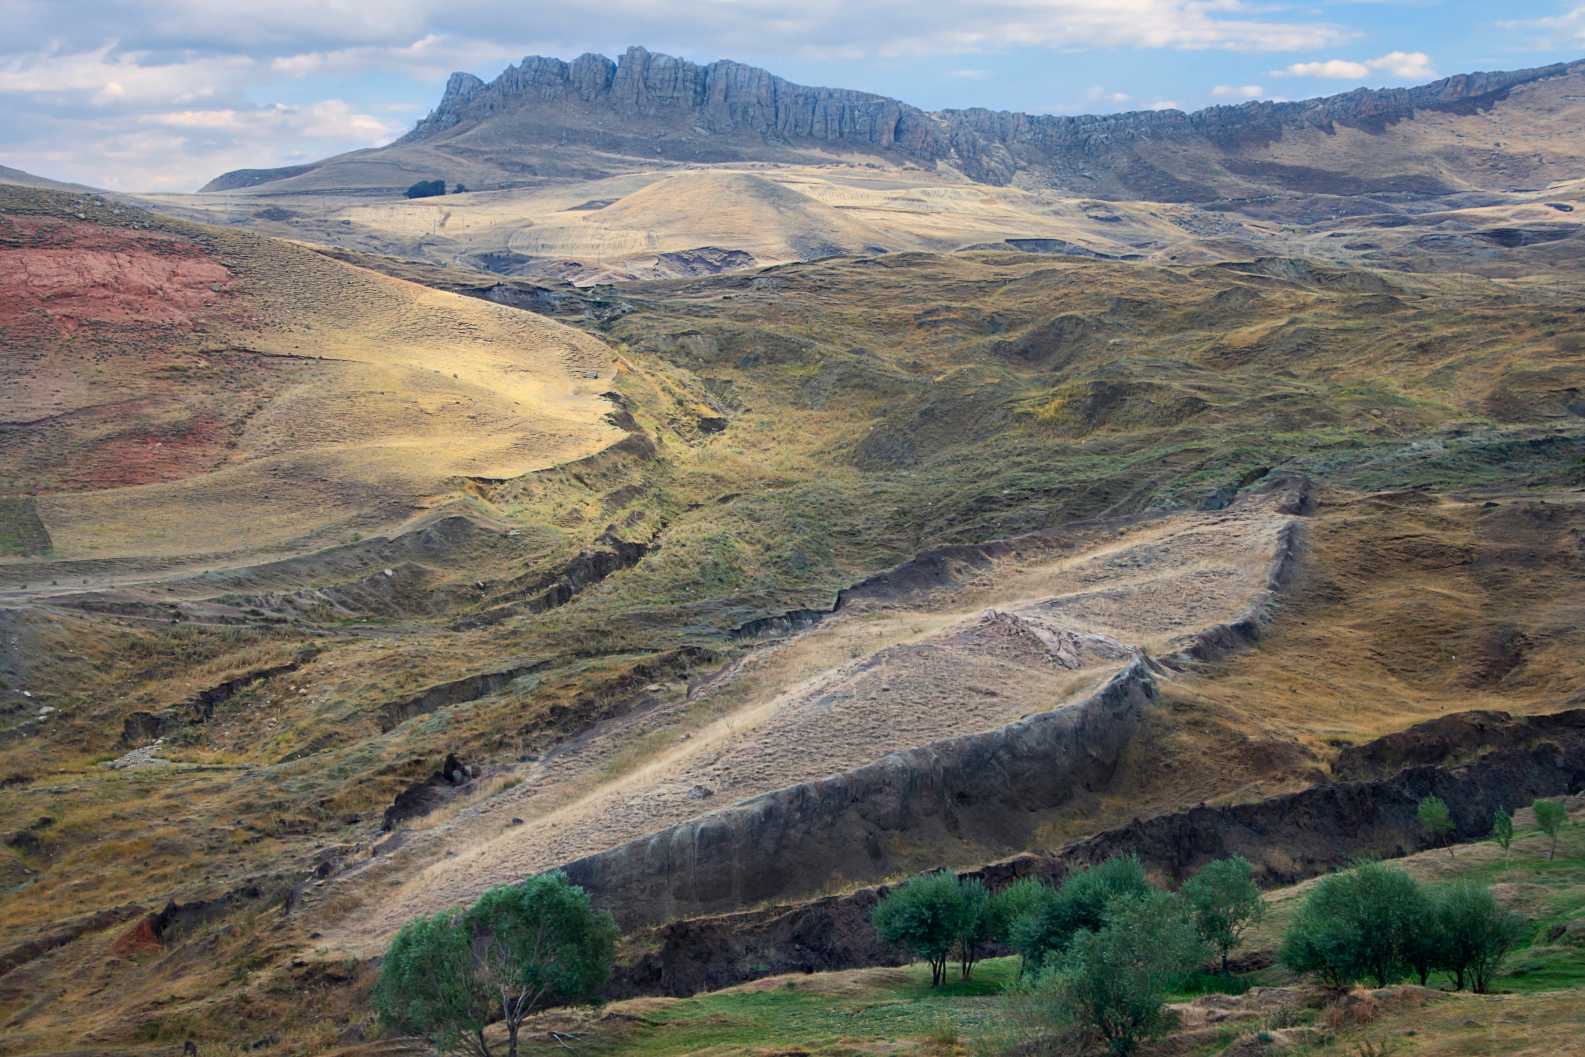 Ostaci Noine arke sa stijenom u obliku čamca na mjestu blizu planine Ararat gdje se vjeruje da je arka počivala u Dogubeyazitu, Turska